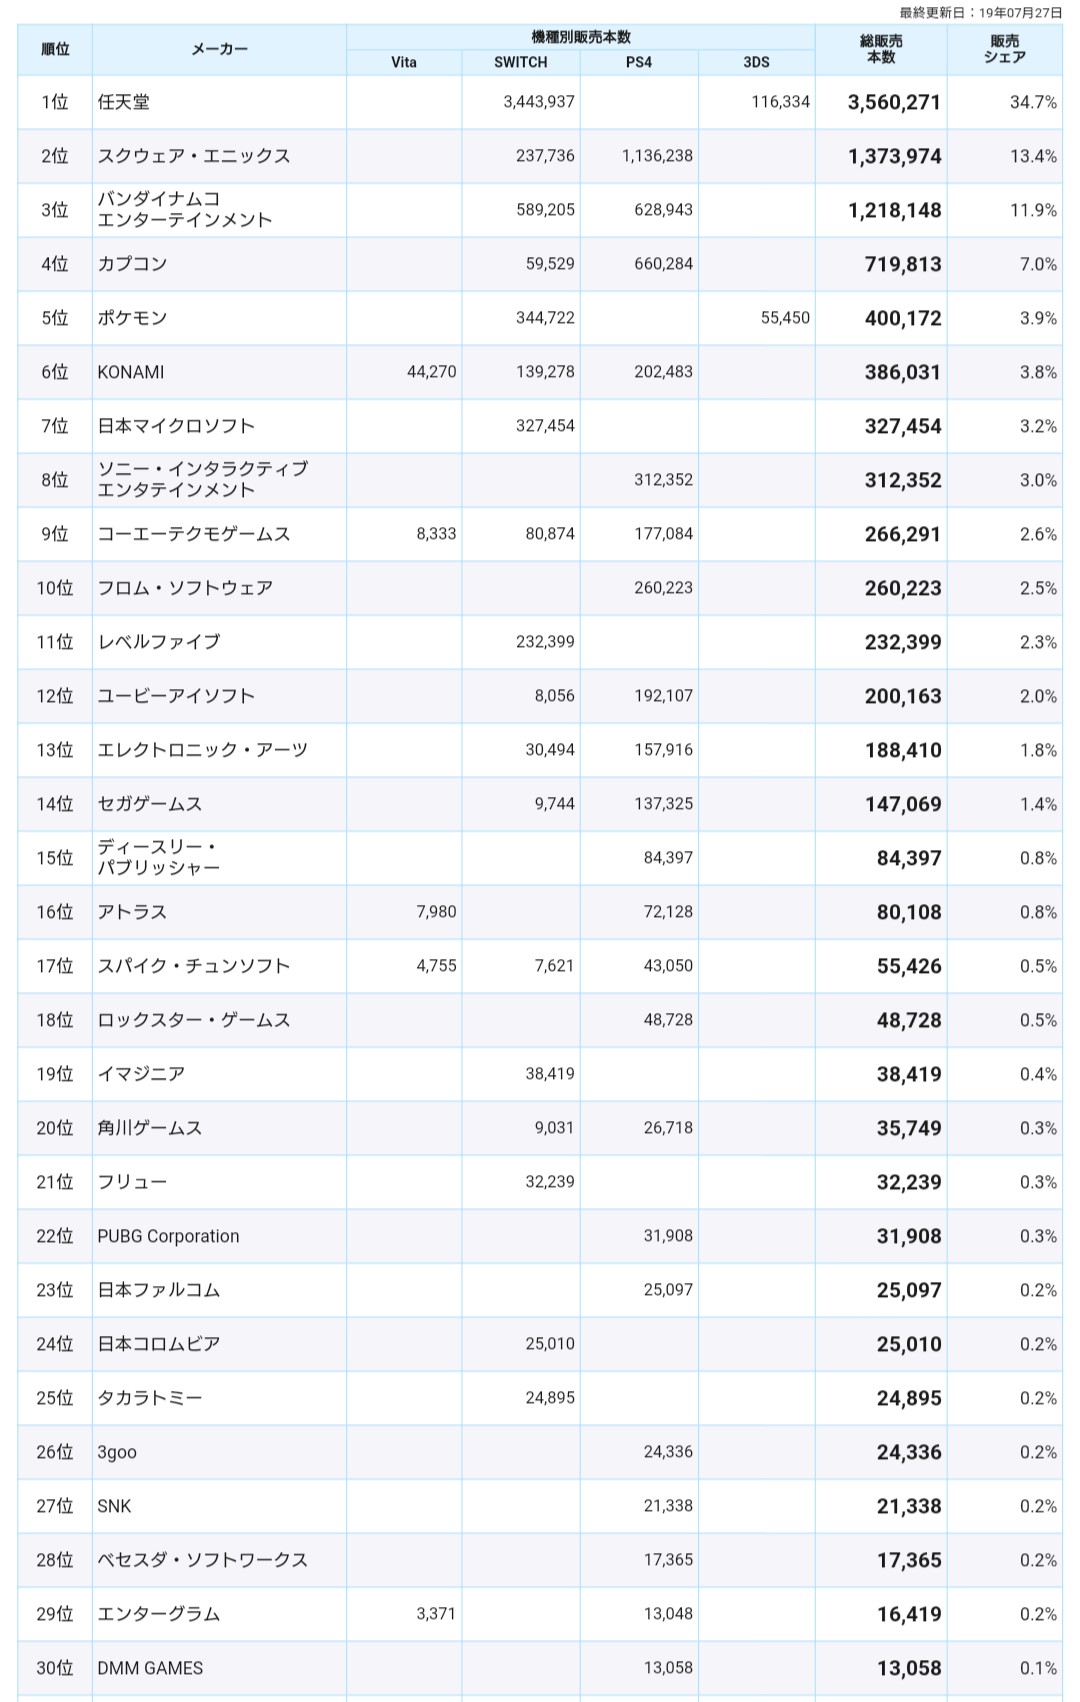 2019年日本游戏销售榜曝出 任天堂强势登顶遥遥领先